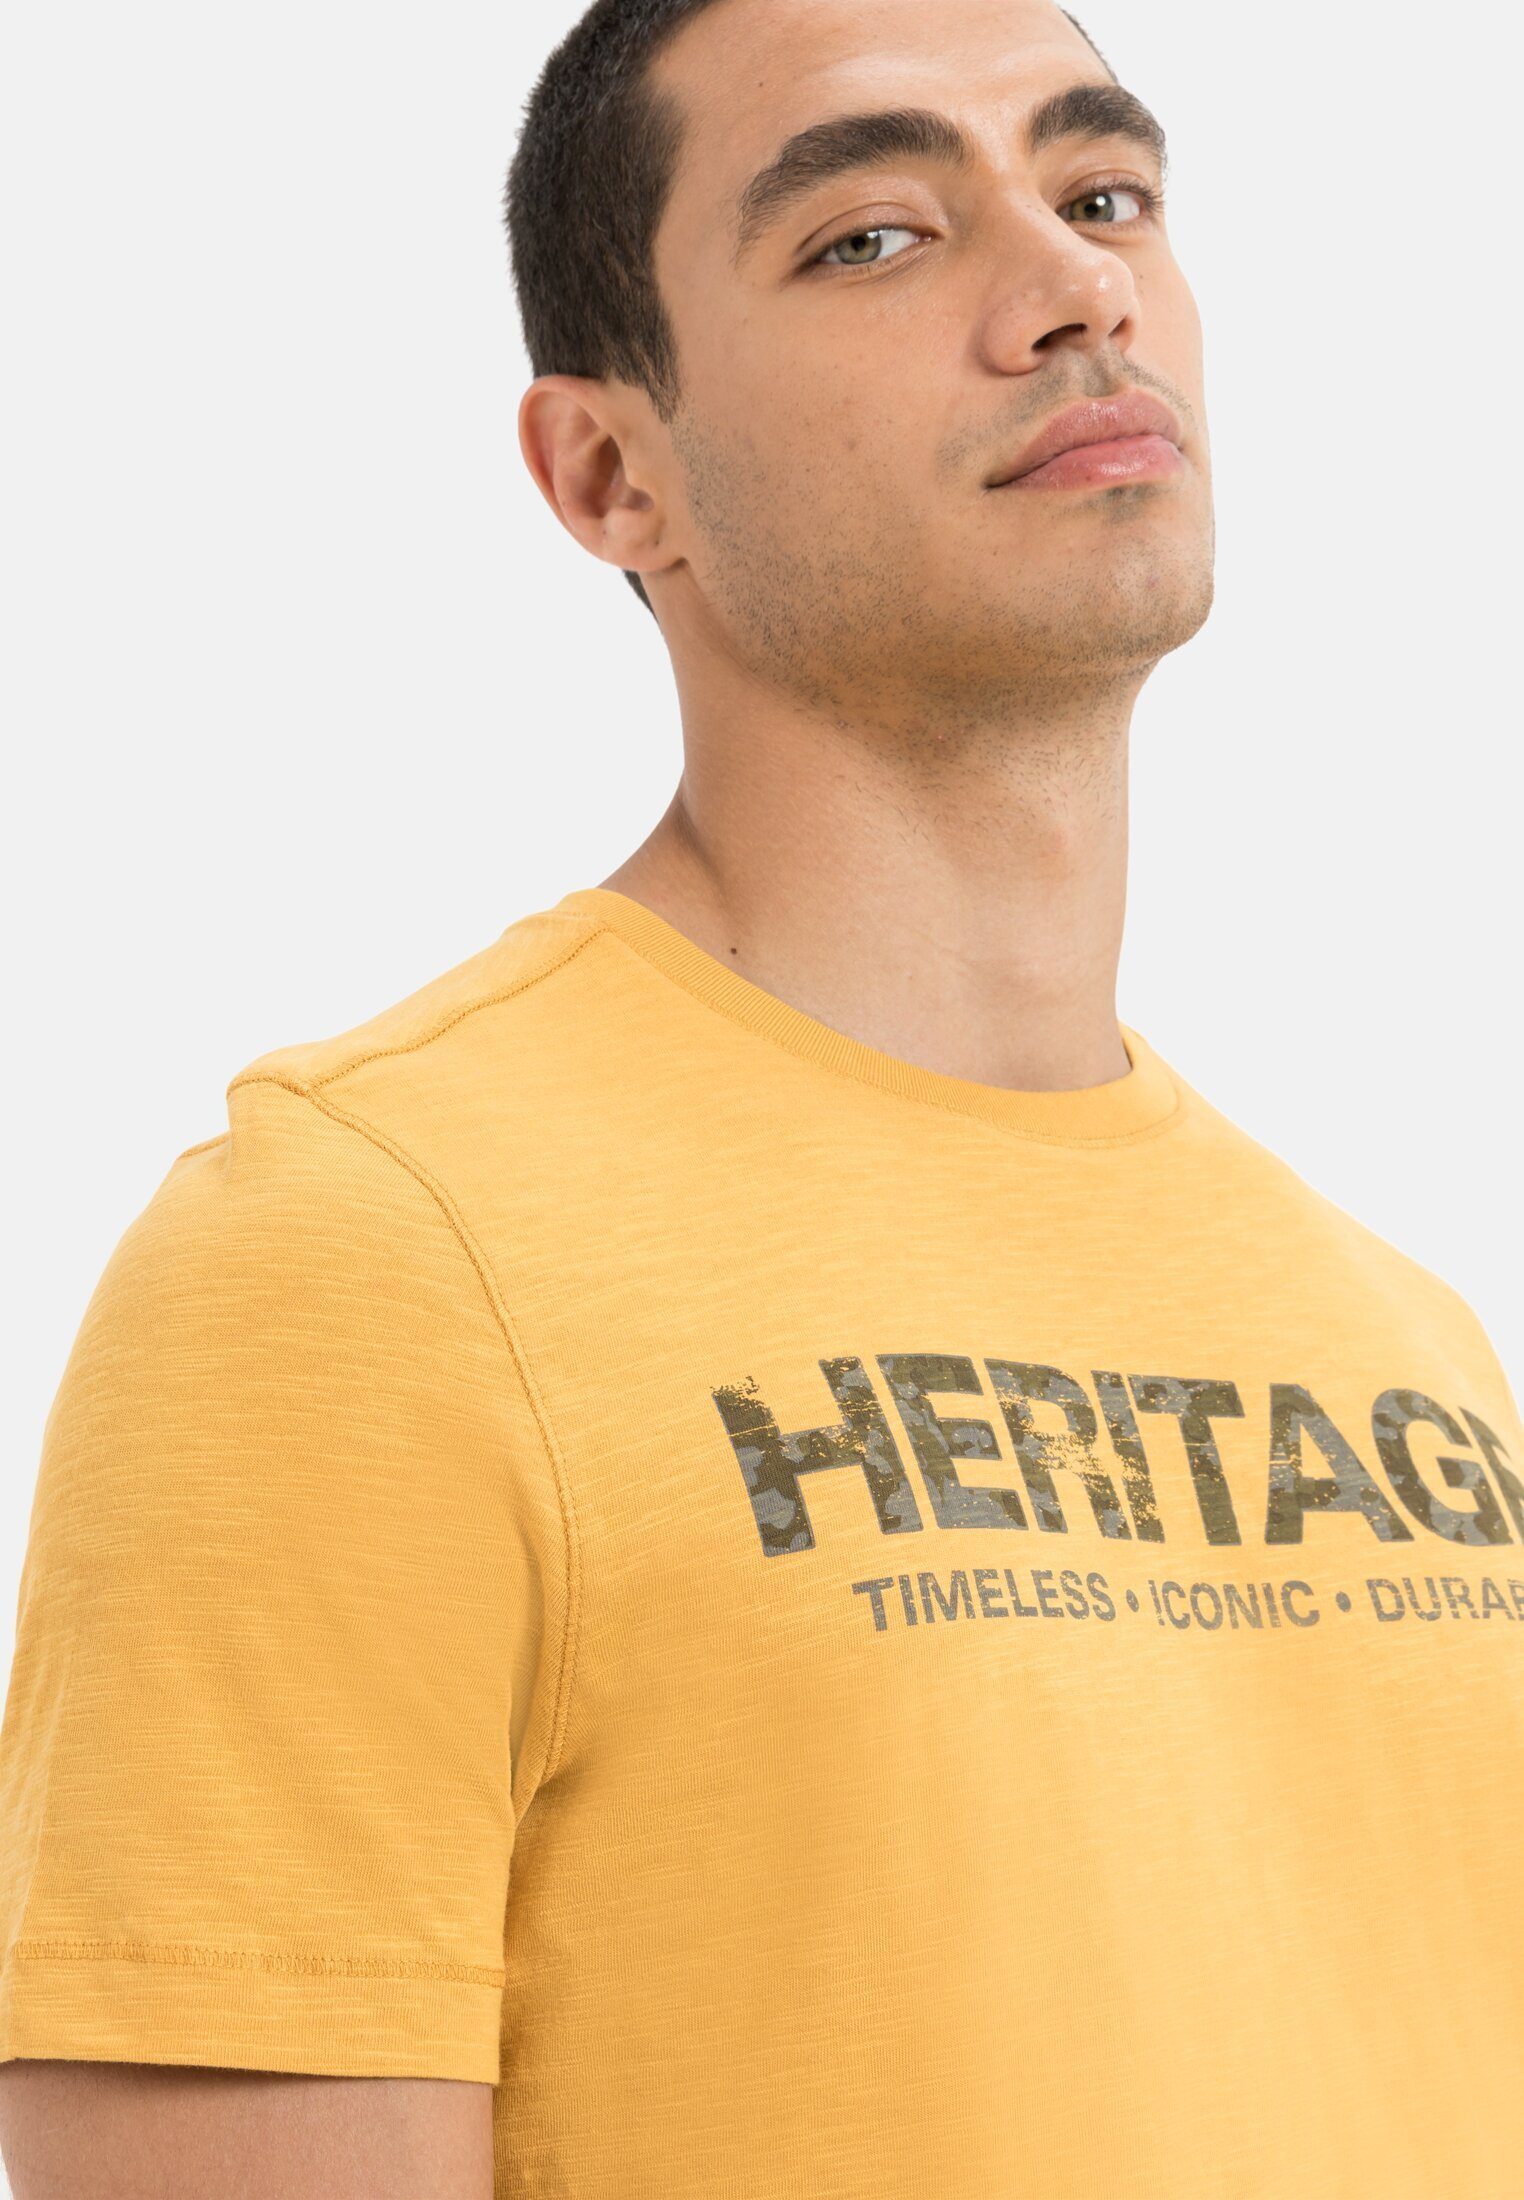 active Bio-Baumwolle aus Gelb camel T-Shirt